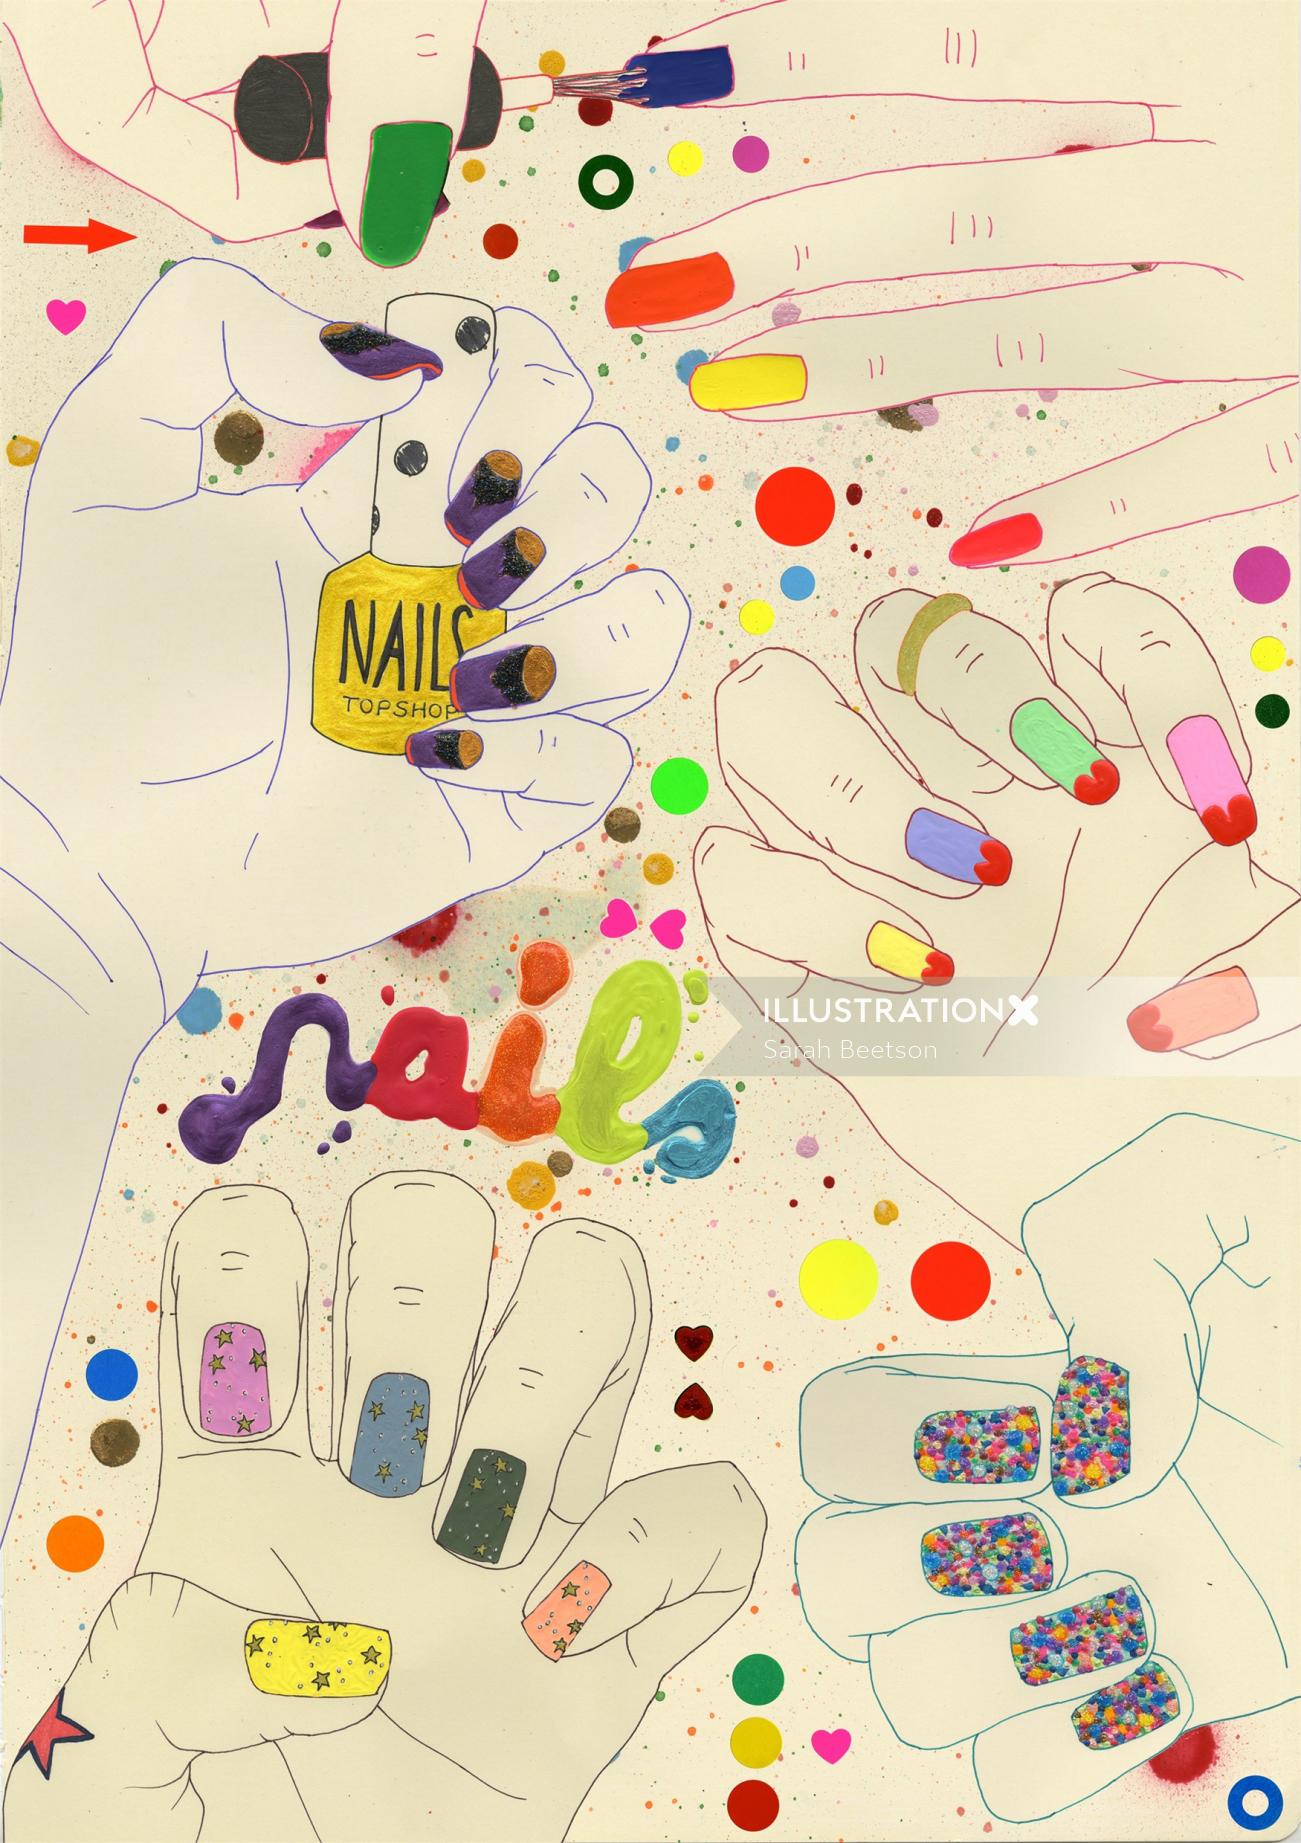 Illustration des ongles colorés par Sarah Beetson